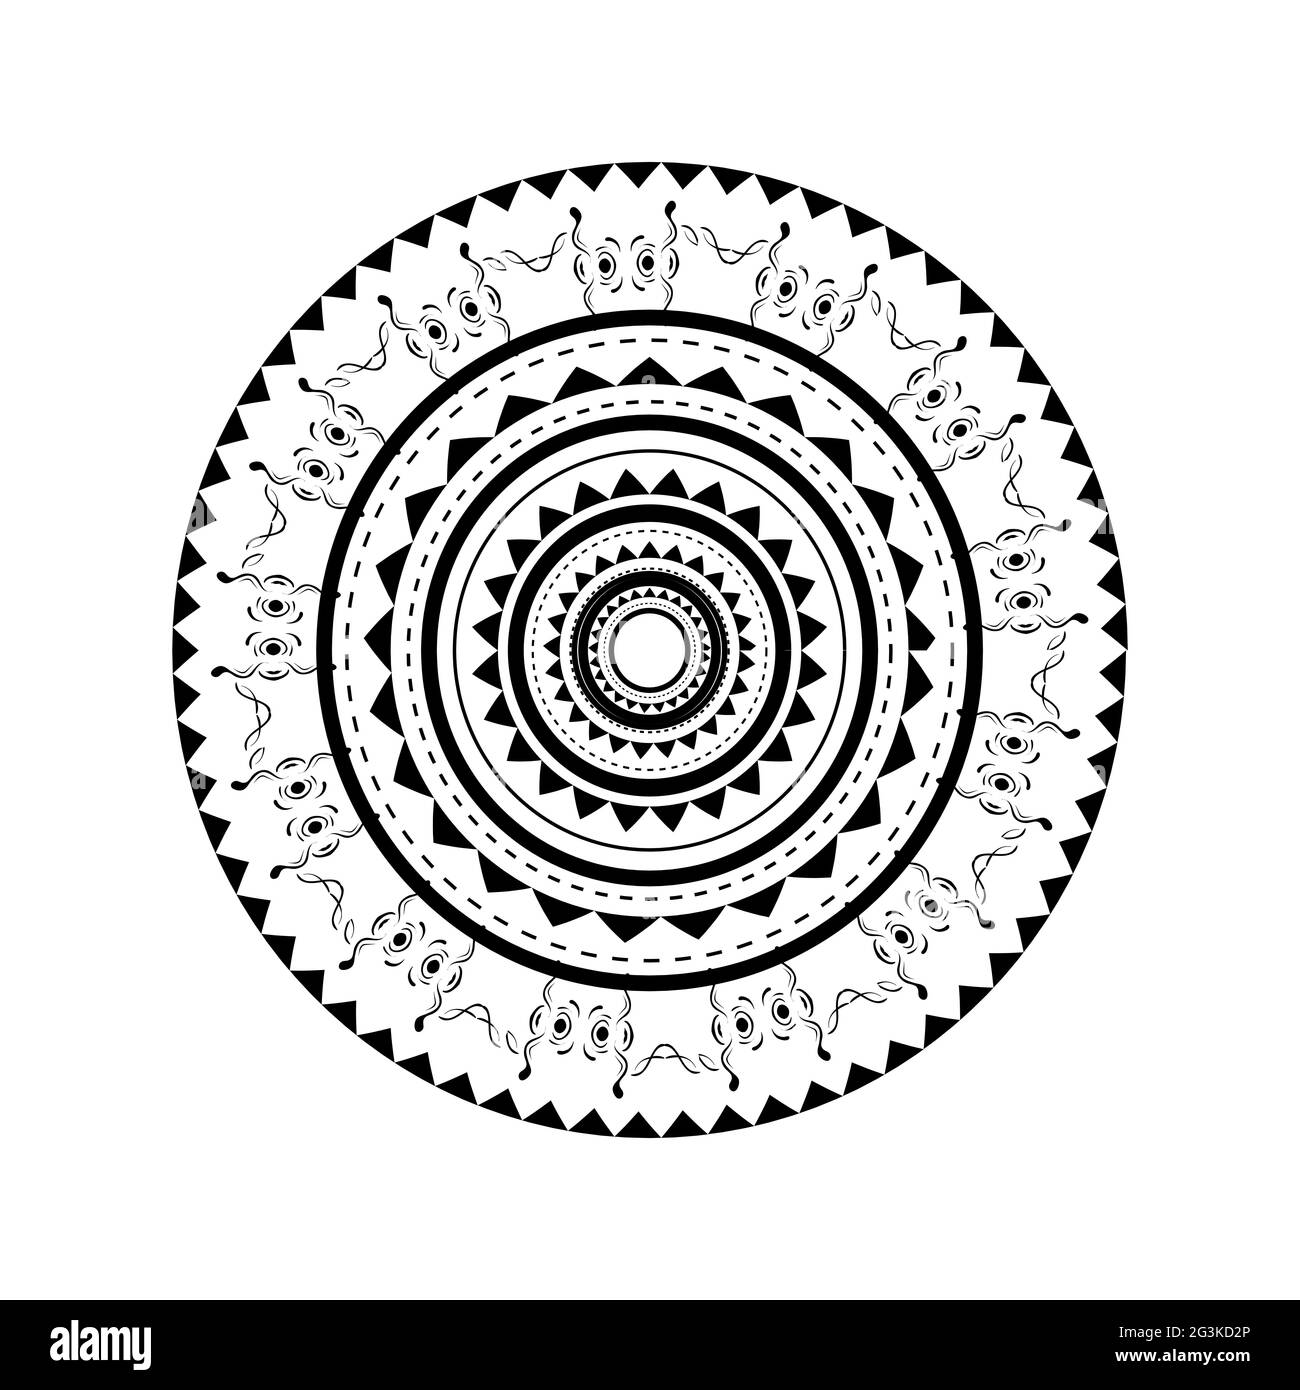 Illustration du motif maori à dos arrondi pour tatouage Banque D'Images